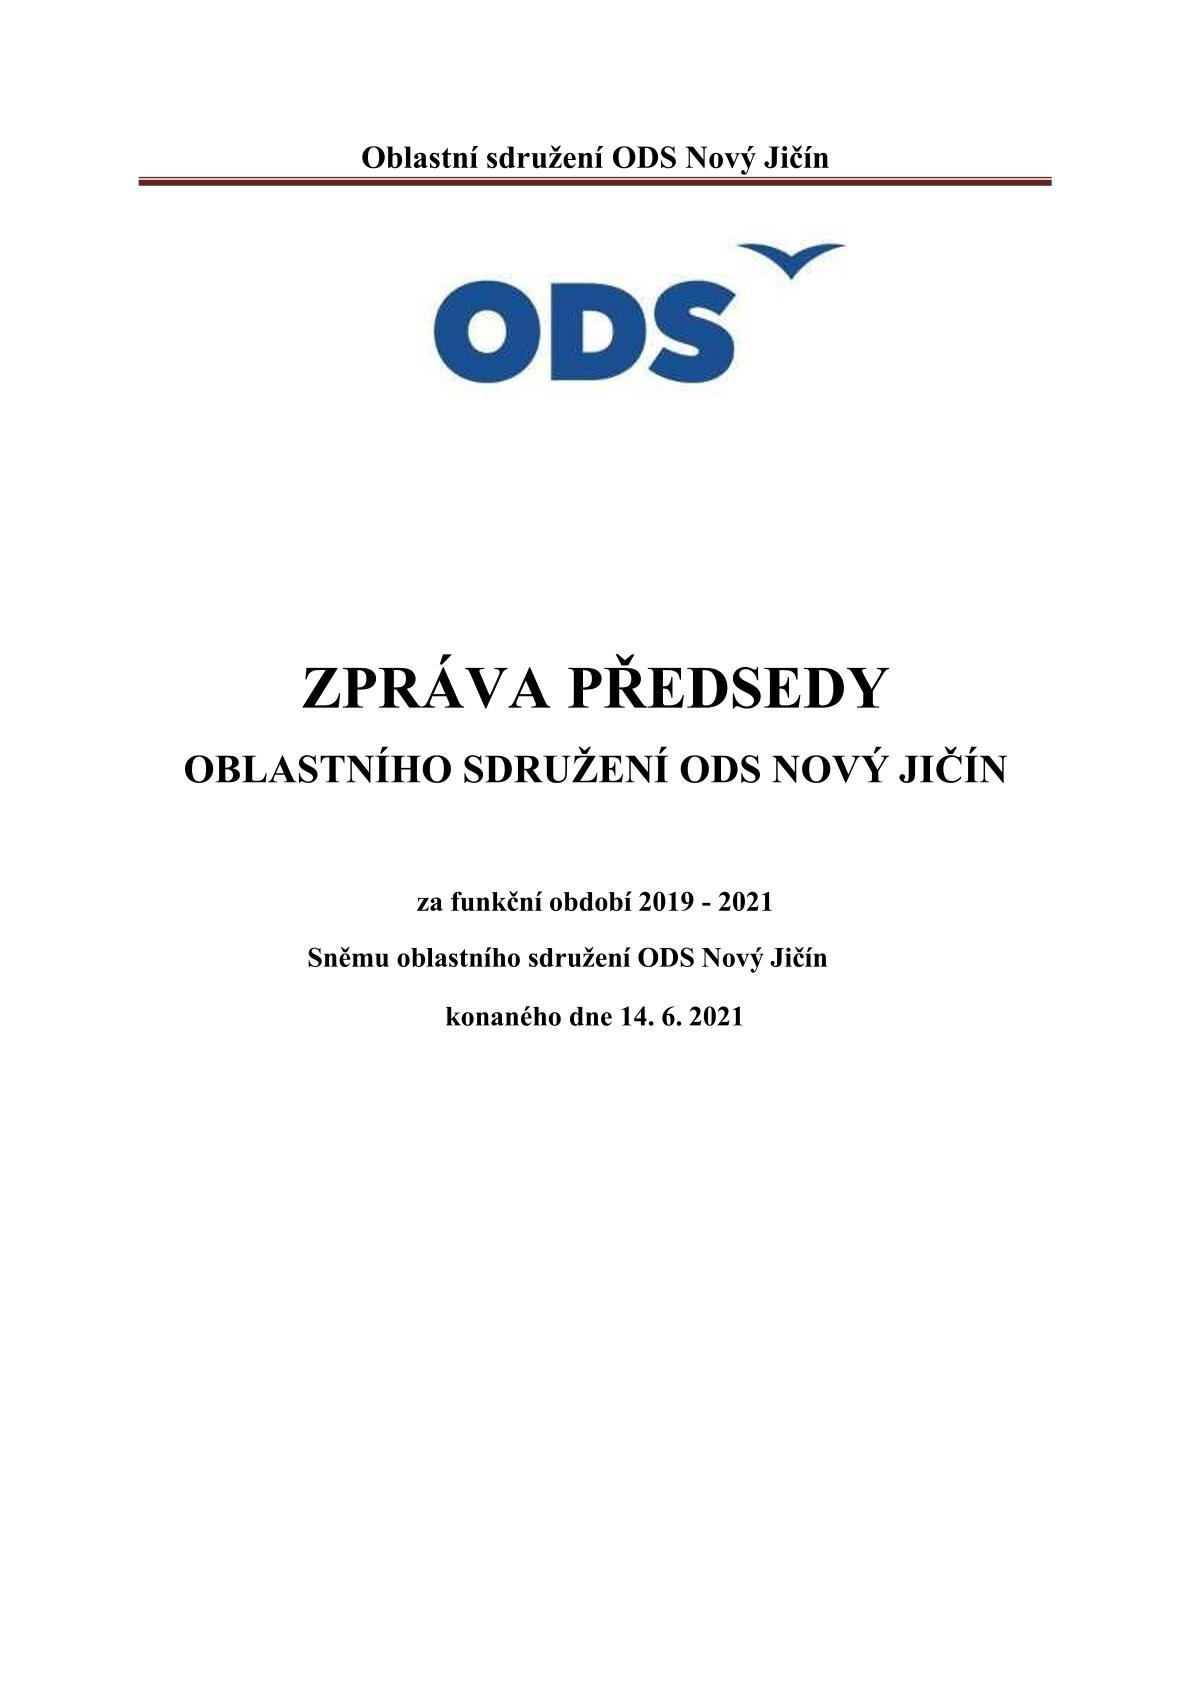 Zpráva předsedy OS ODS Nový Jičín Bc. Jakuba Jandy